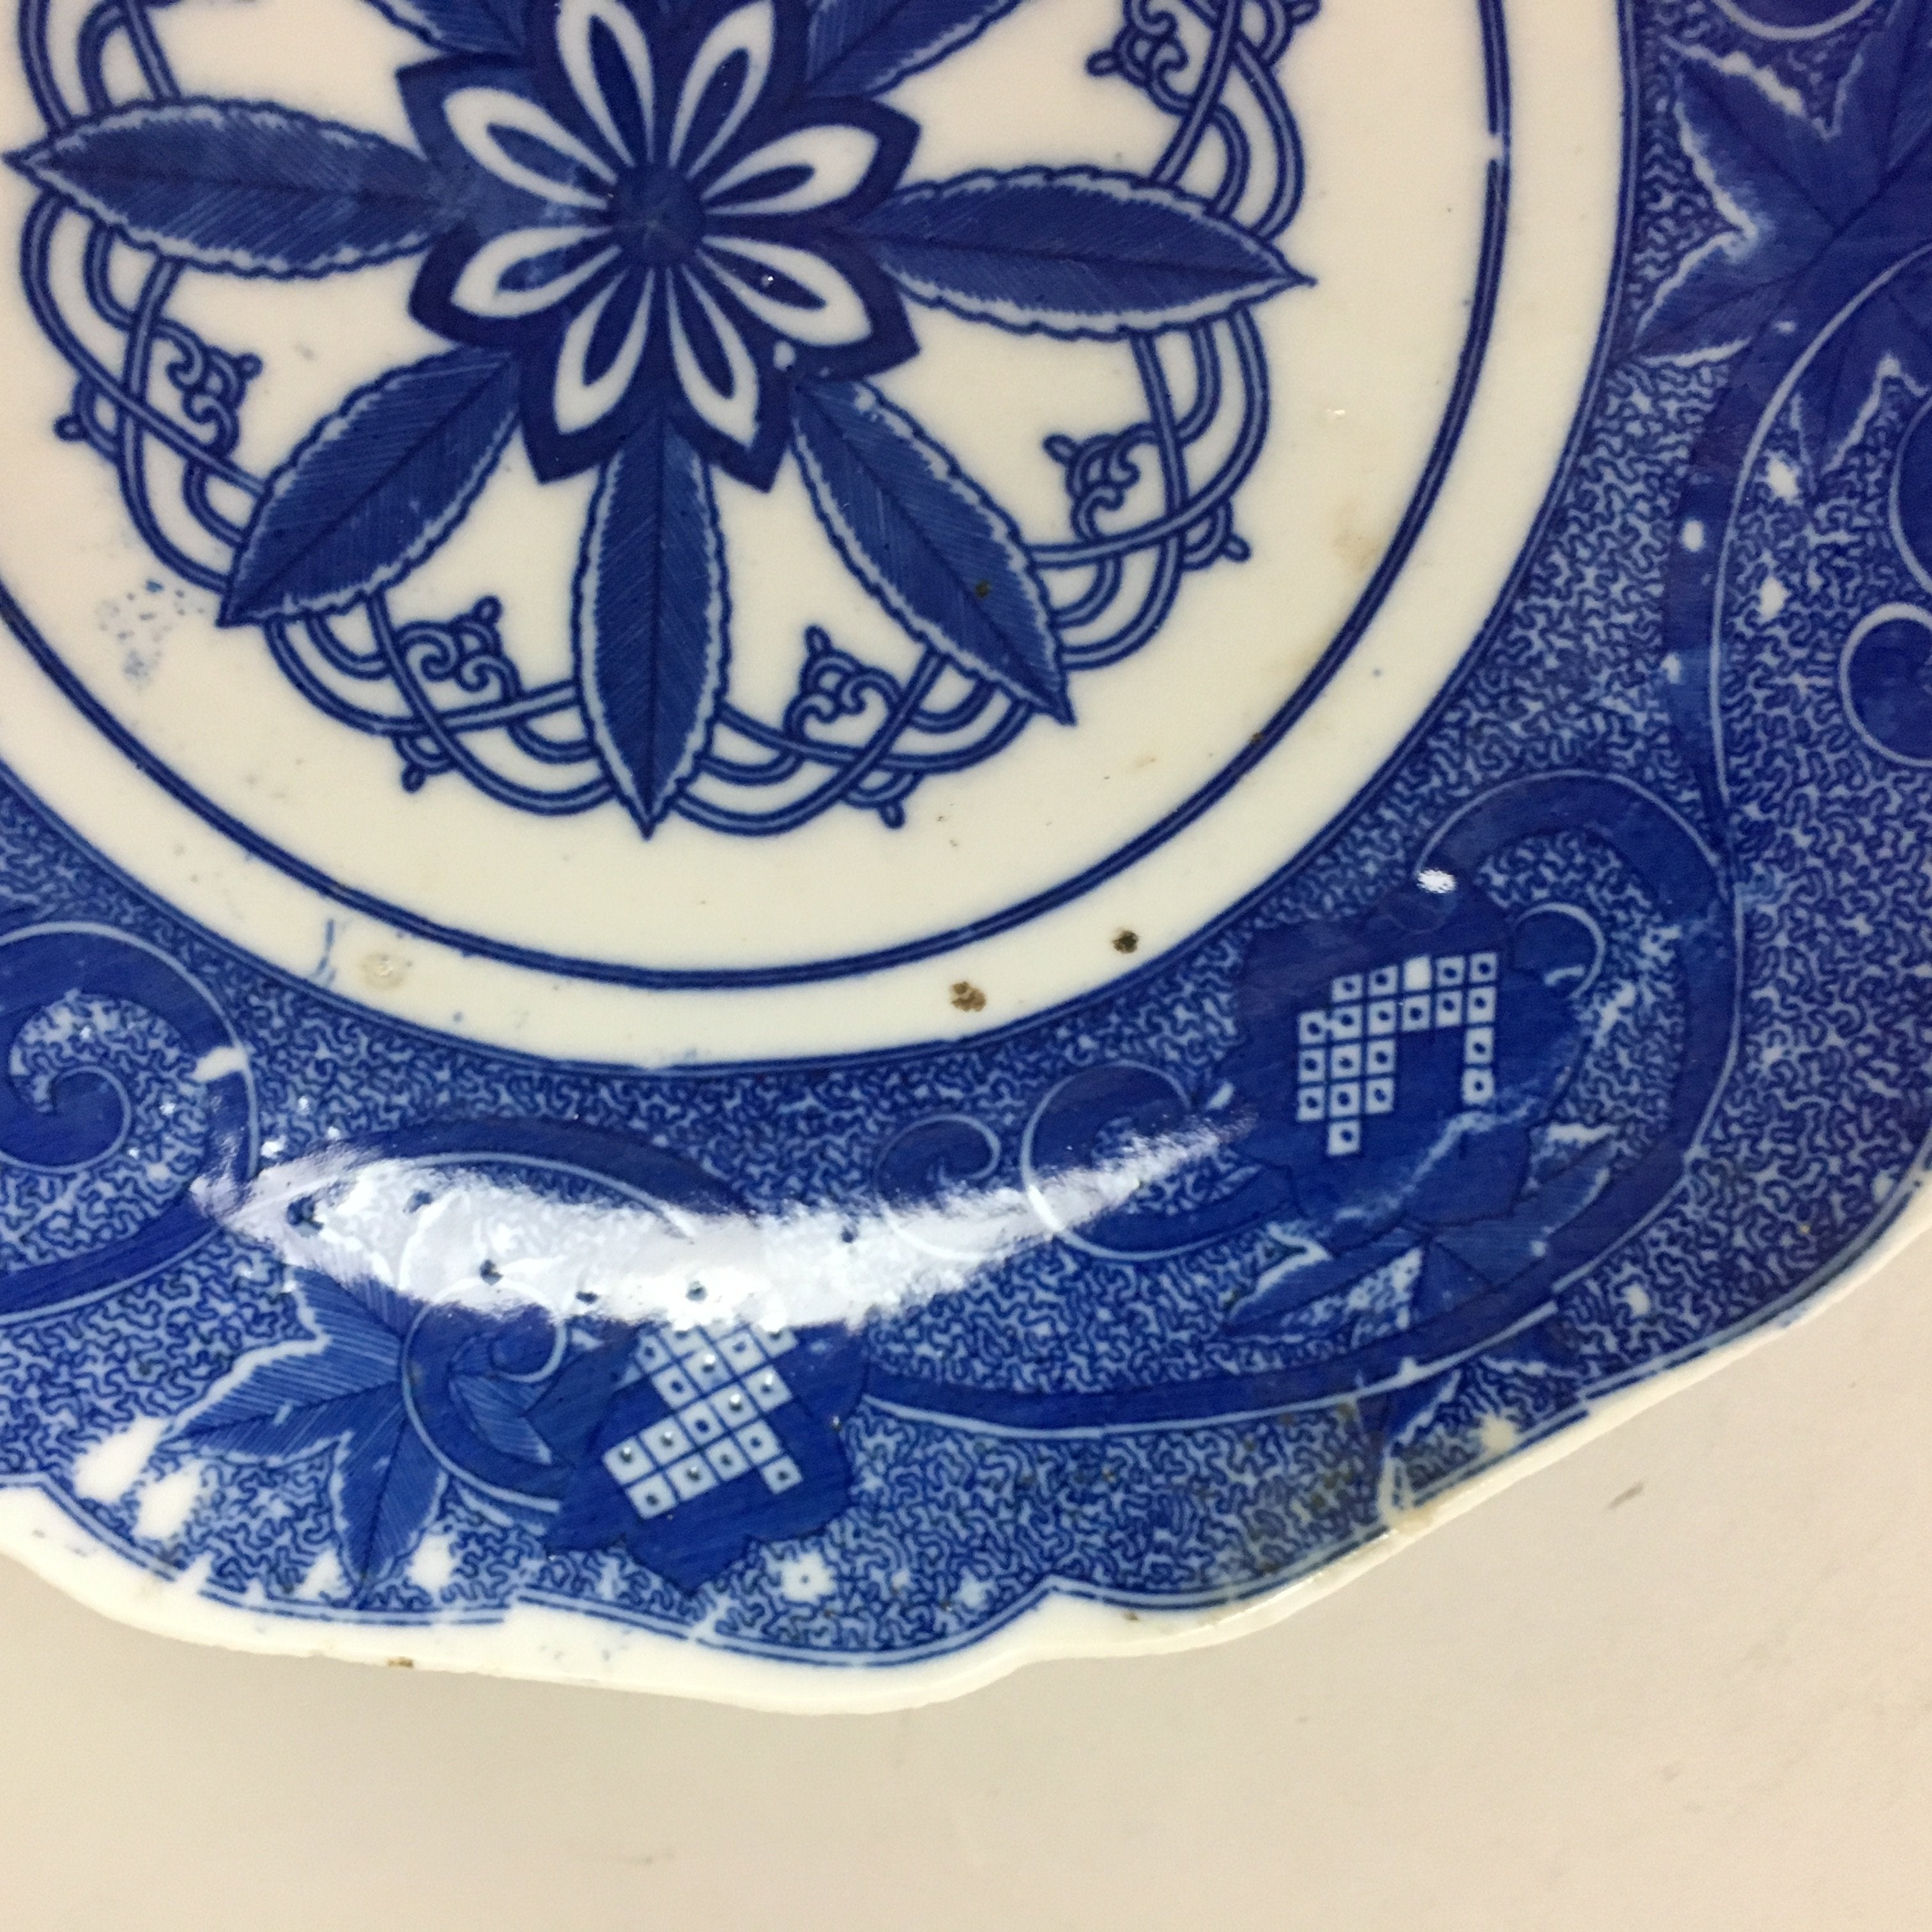 Japanese Sometsuke Porcelain Plate Vtg Floral Flower Vine Leaf Blue White PT506